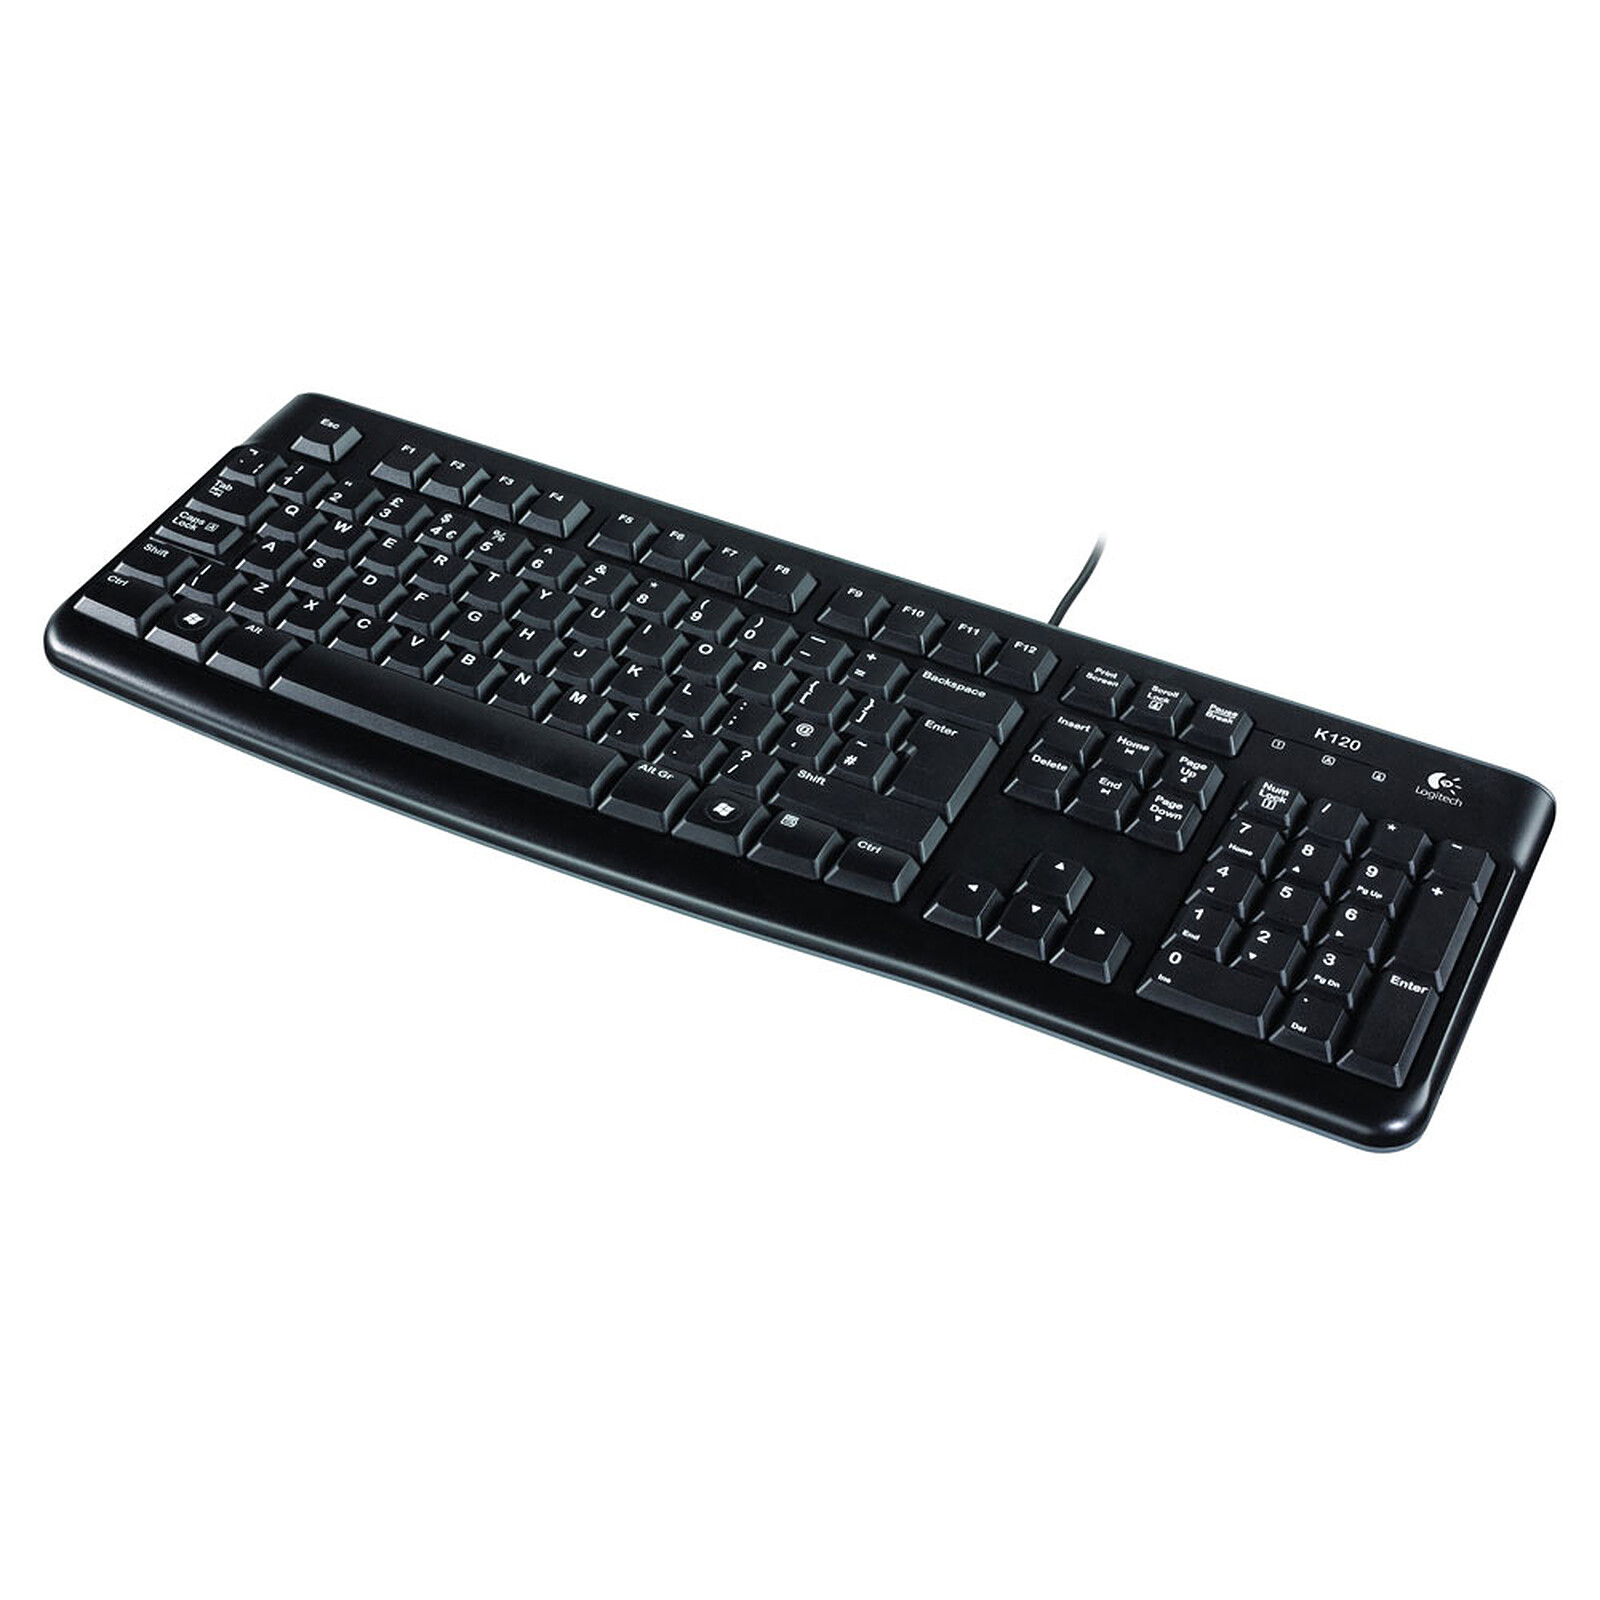 Logitech Keyboard K120 Business - Logitech LDLC